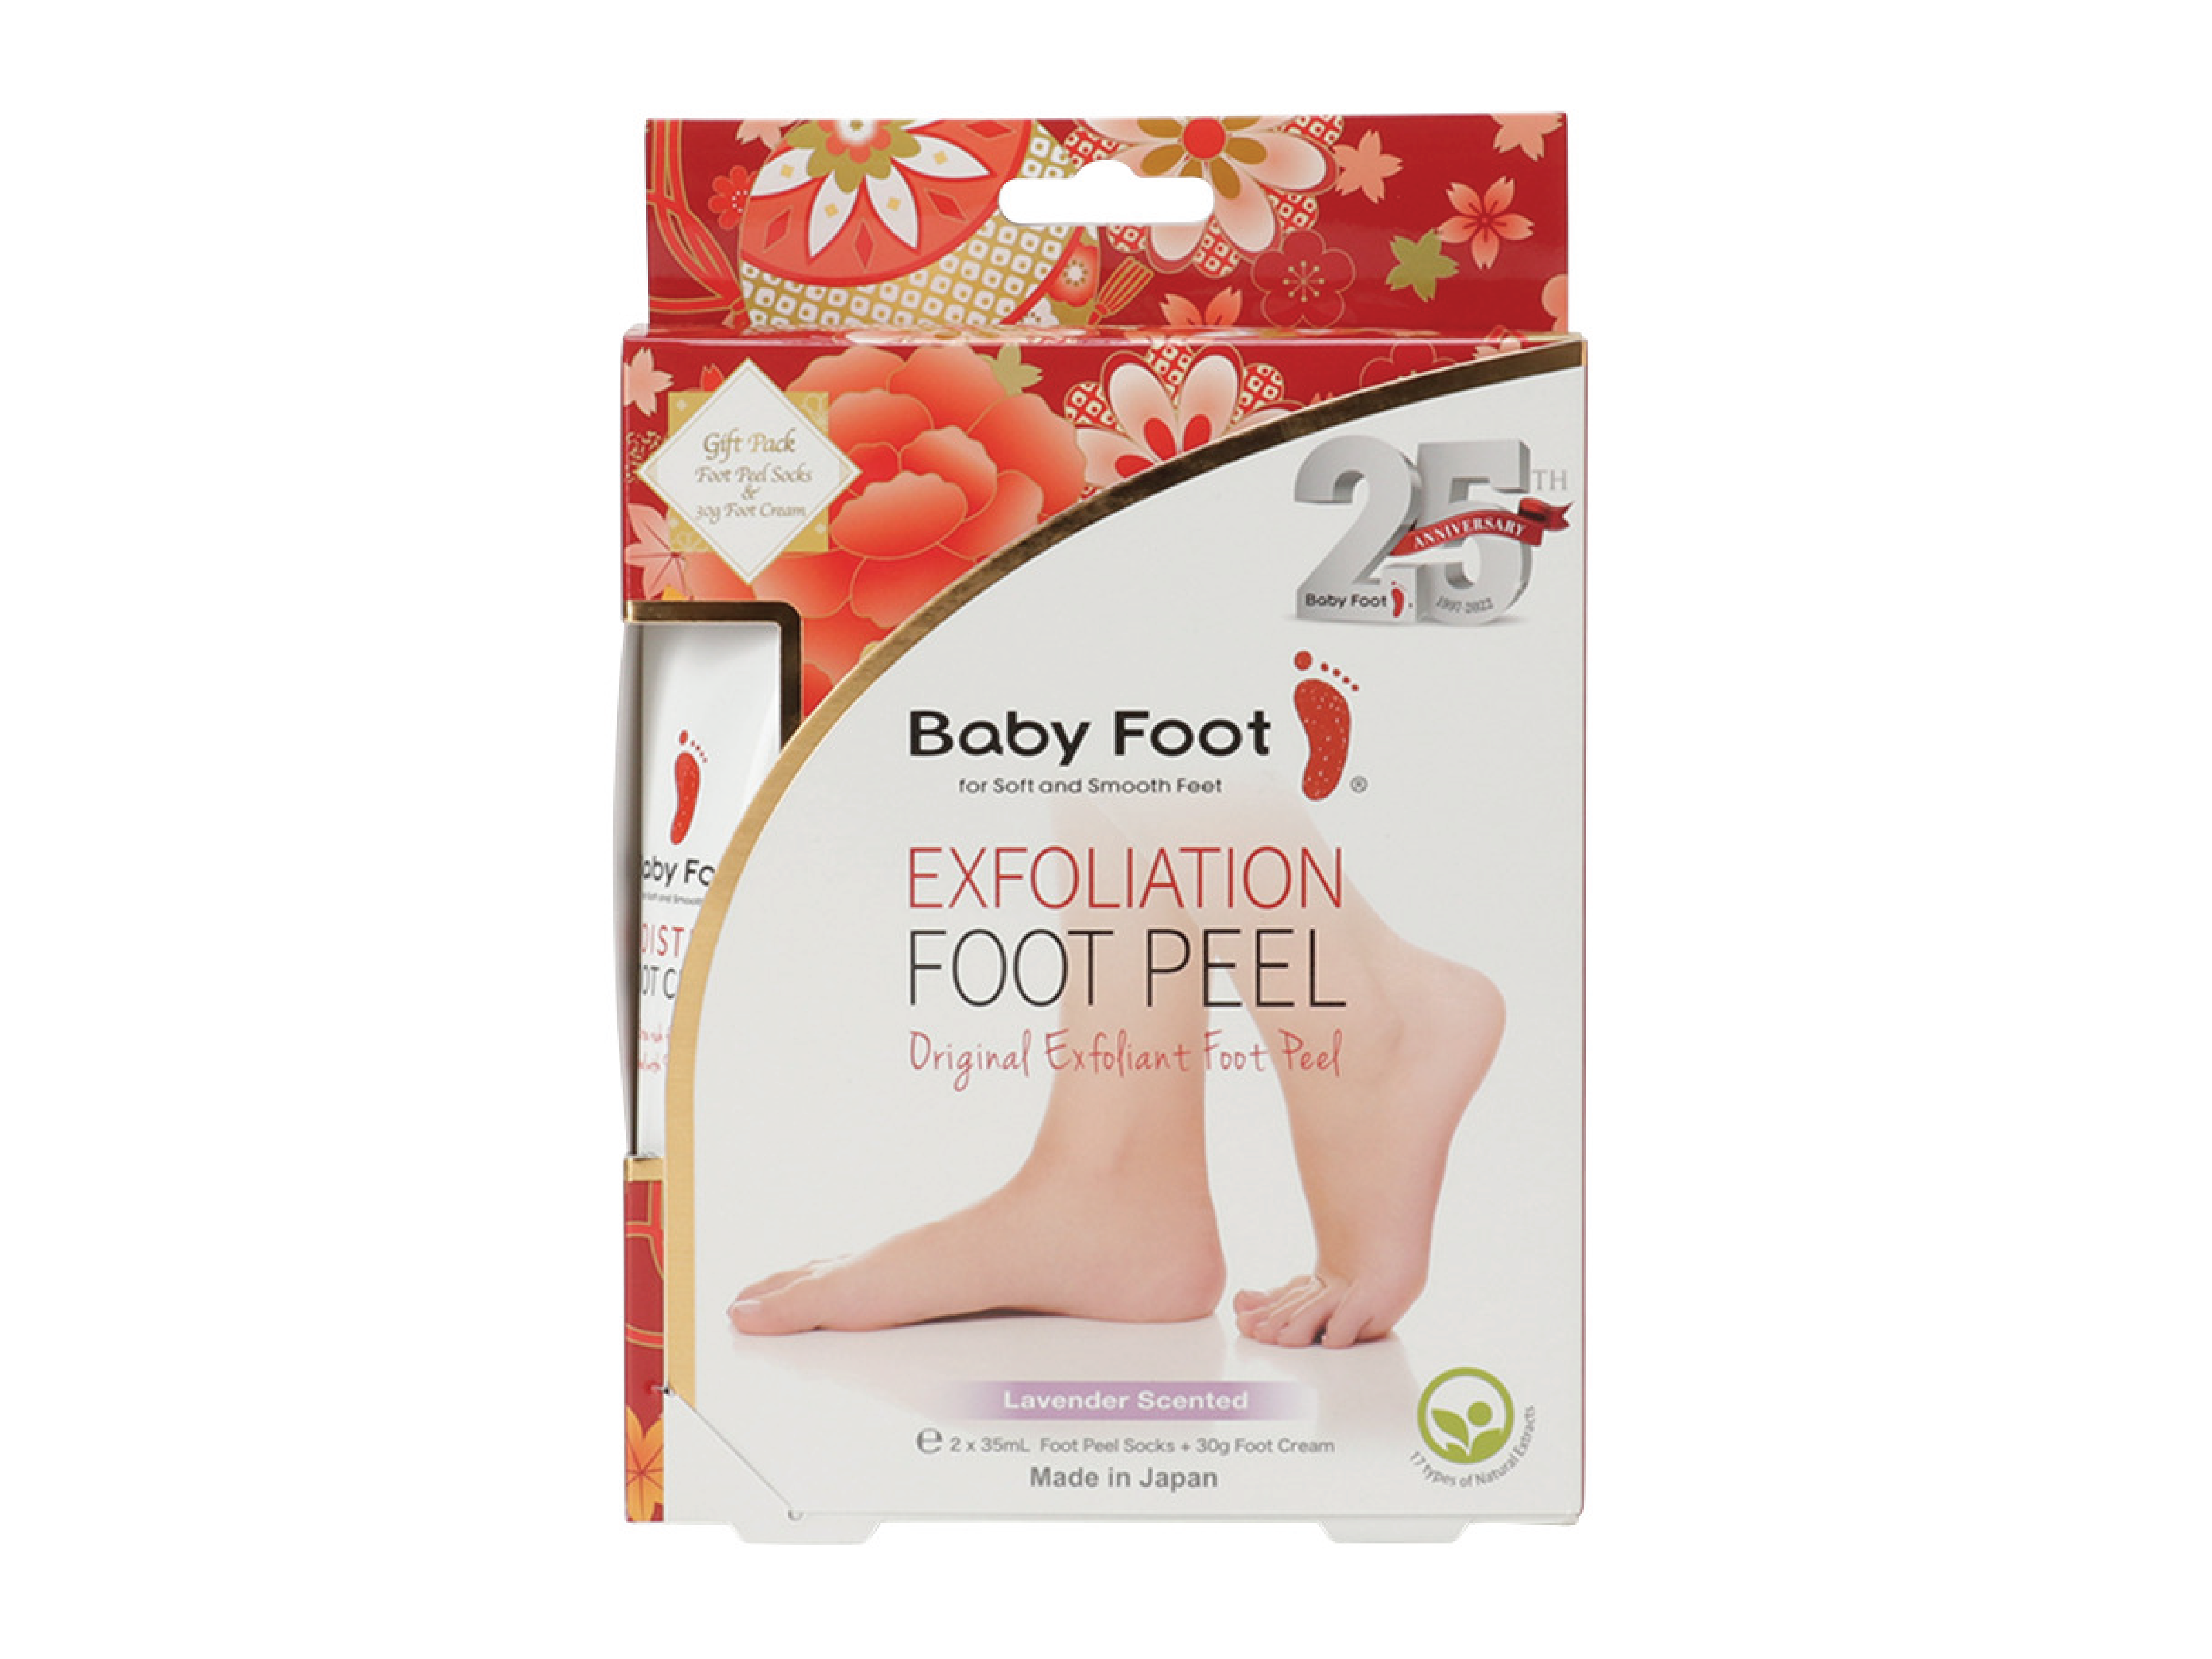 Baby Foot Exfoliation Foot Peel Gift Pack, 1 stk.